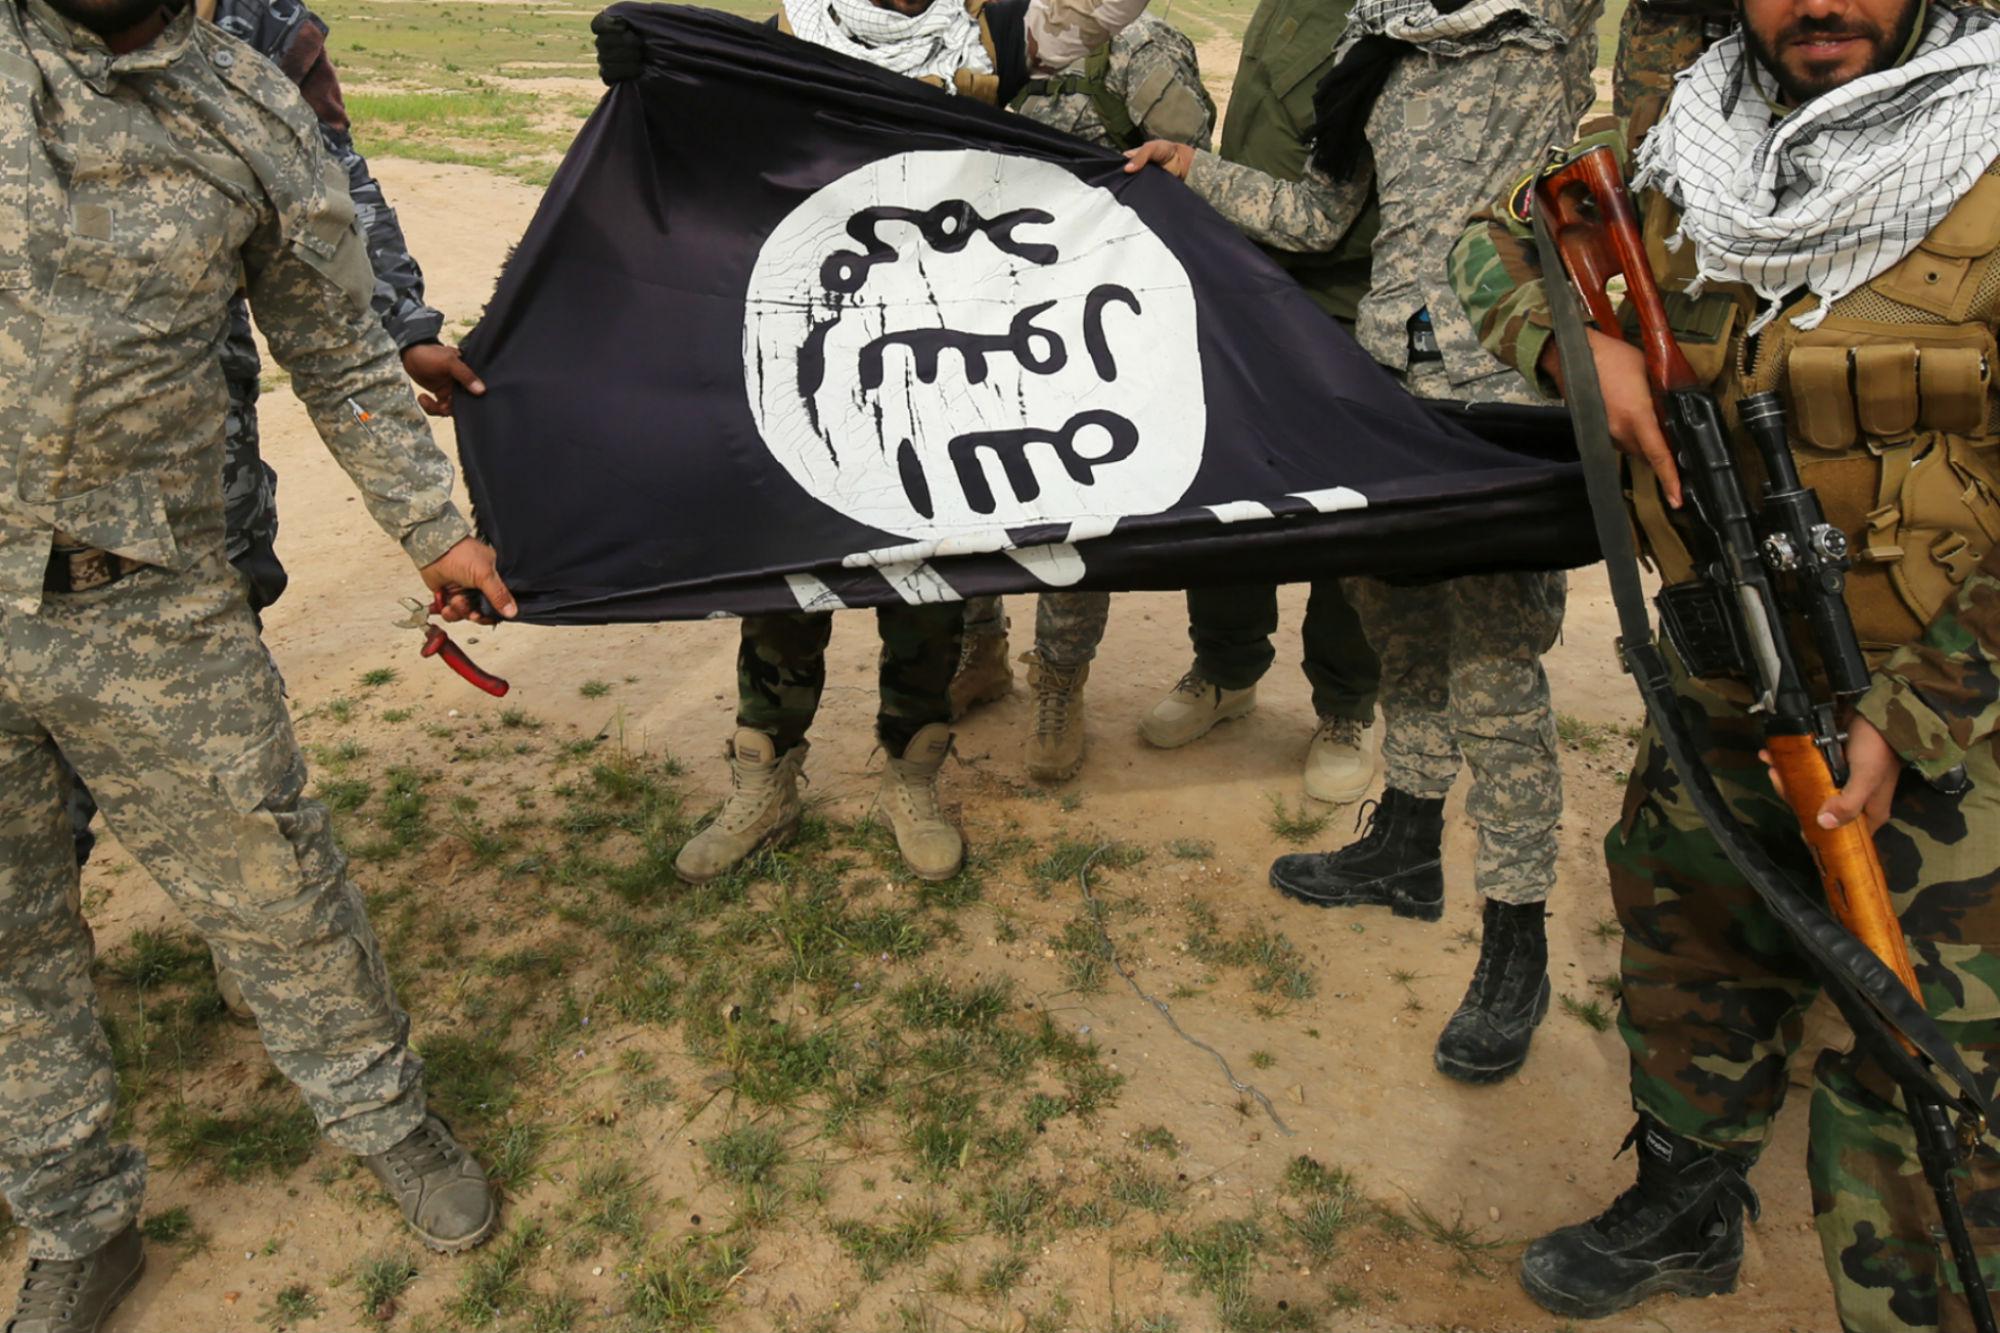 Isis, nuove minacce: "Vendicare ovunque i musulmani, guerra santa contro ebrei e crociati"